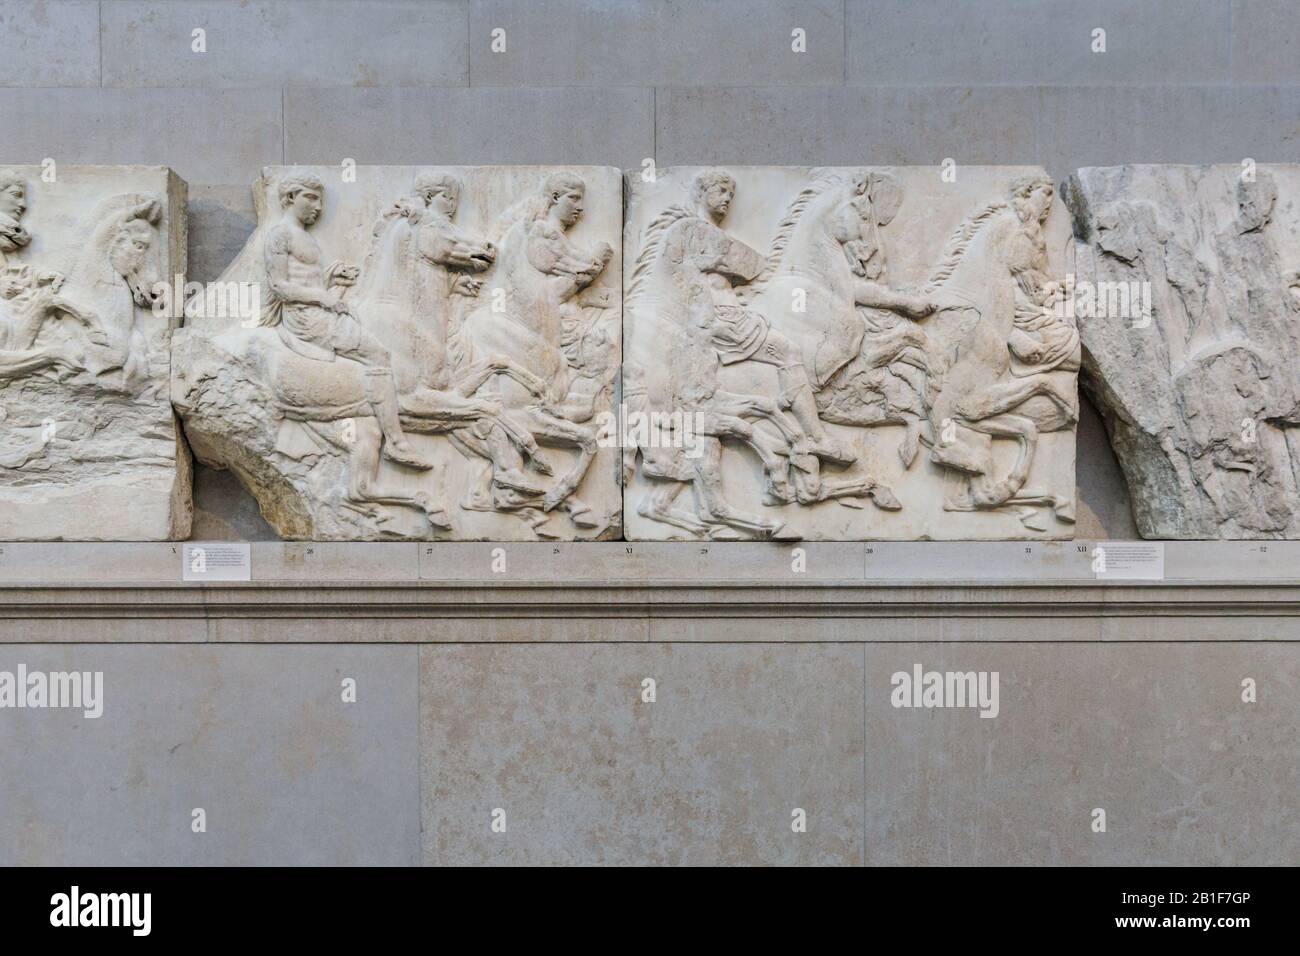 Die South Frieze, Parthenon Marbles, auch bekannt als Elgin Marbles im British Museum, Parthenon Gallery, London, England, Großbritannien Stockfoto